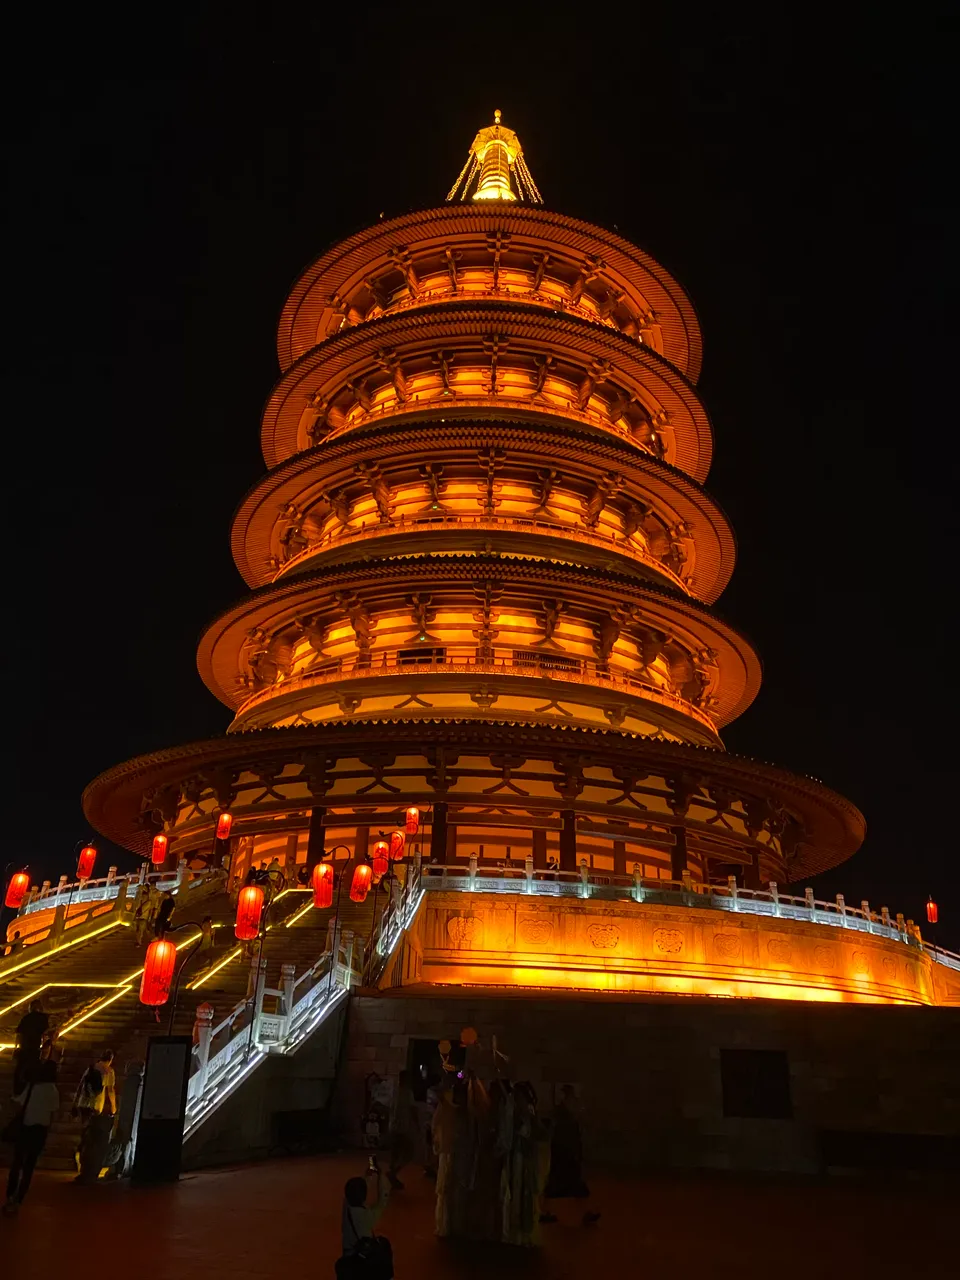 Tiantang (天堂) at night